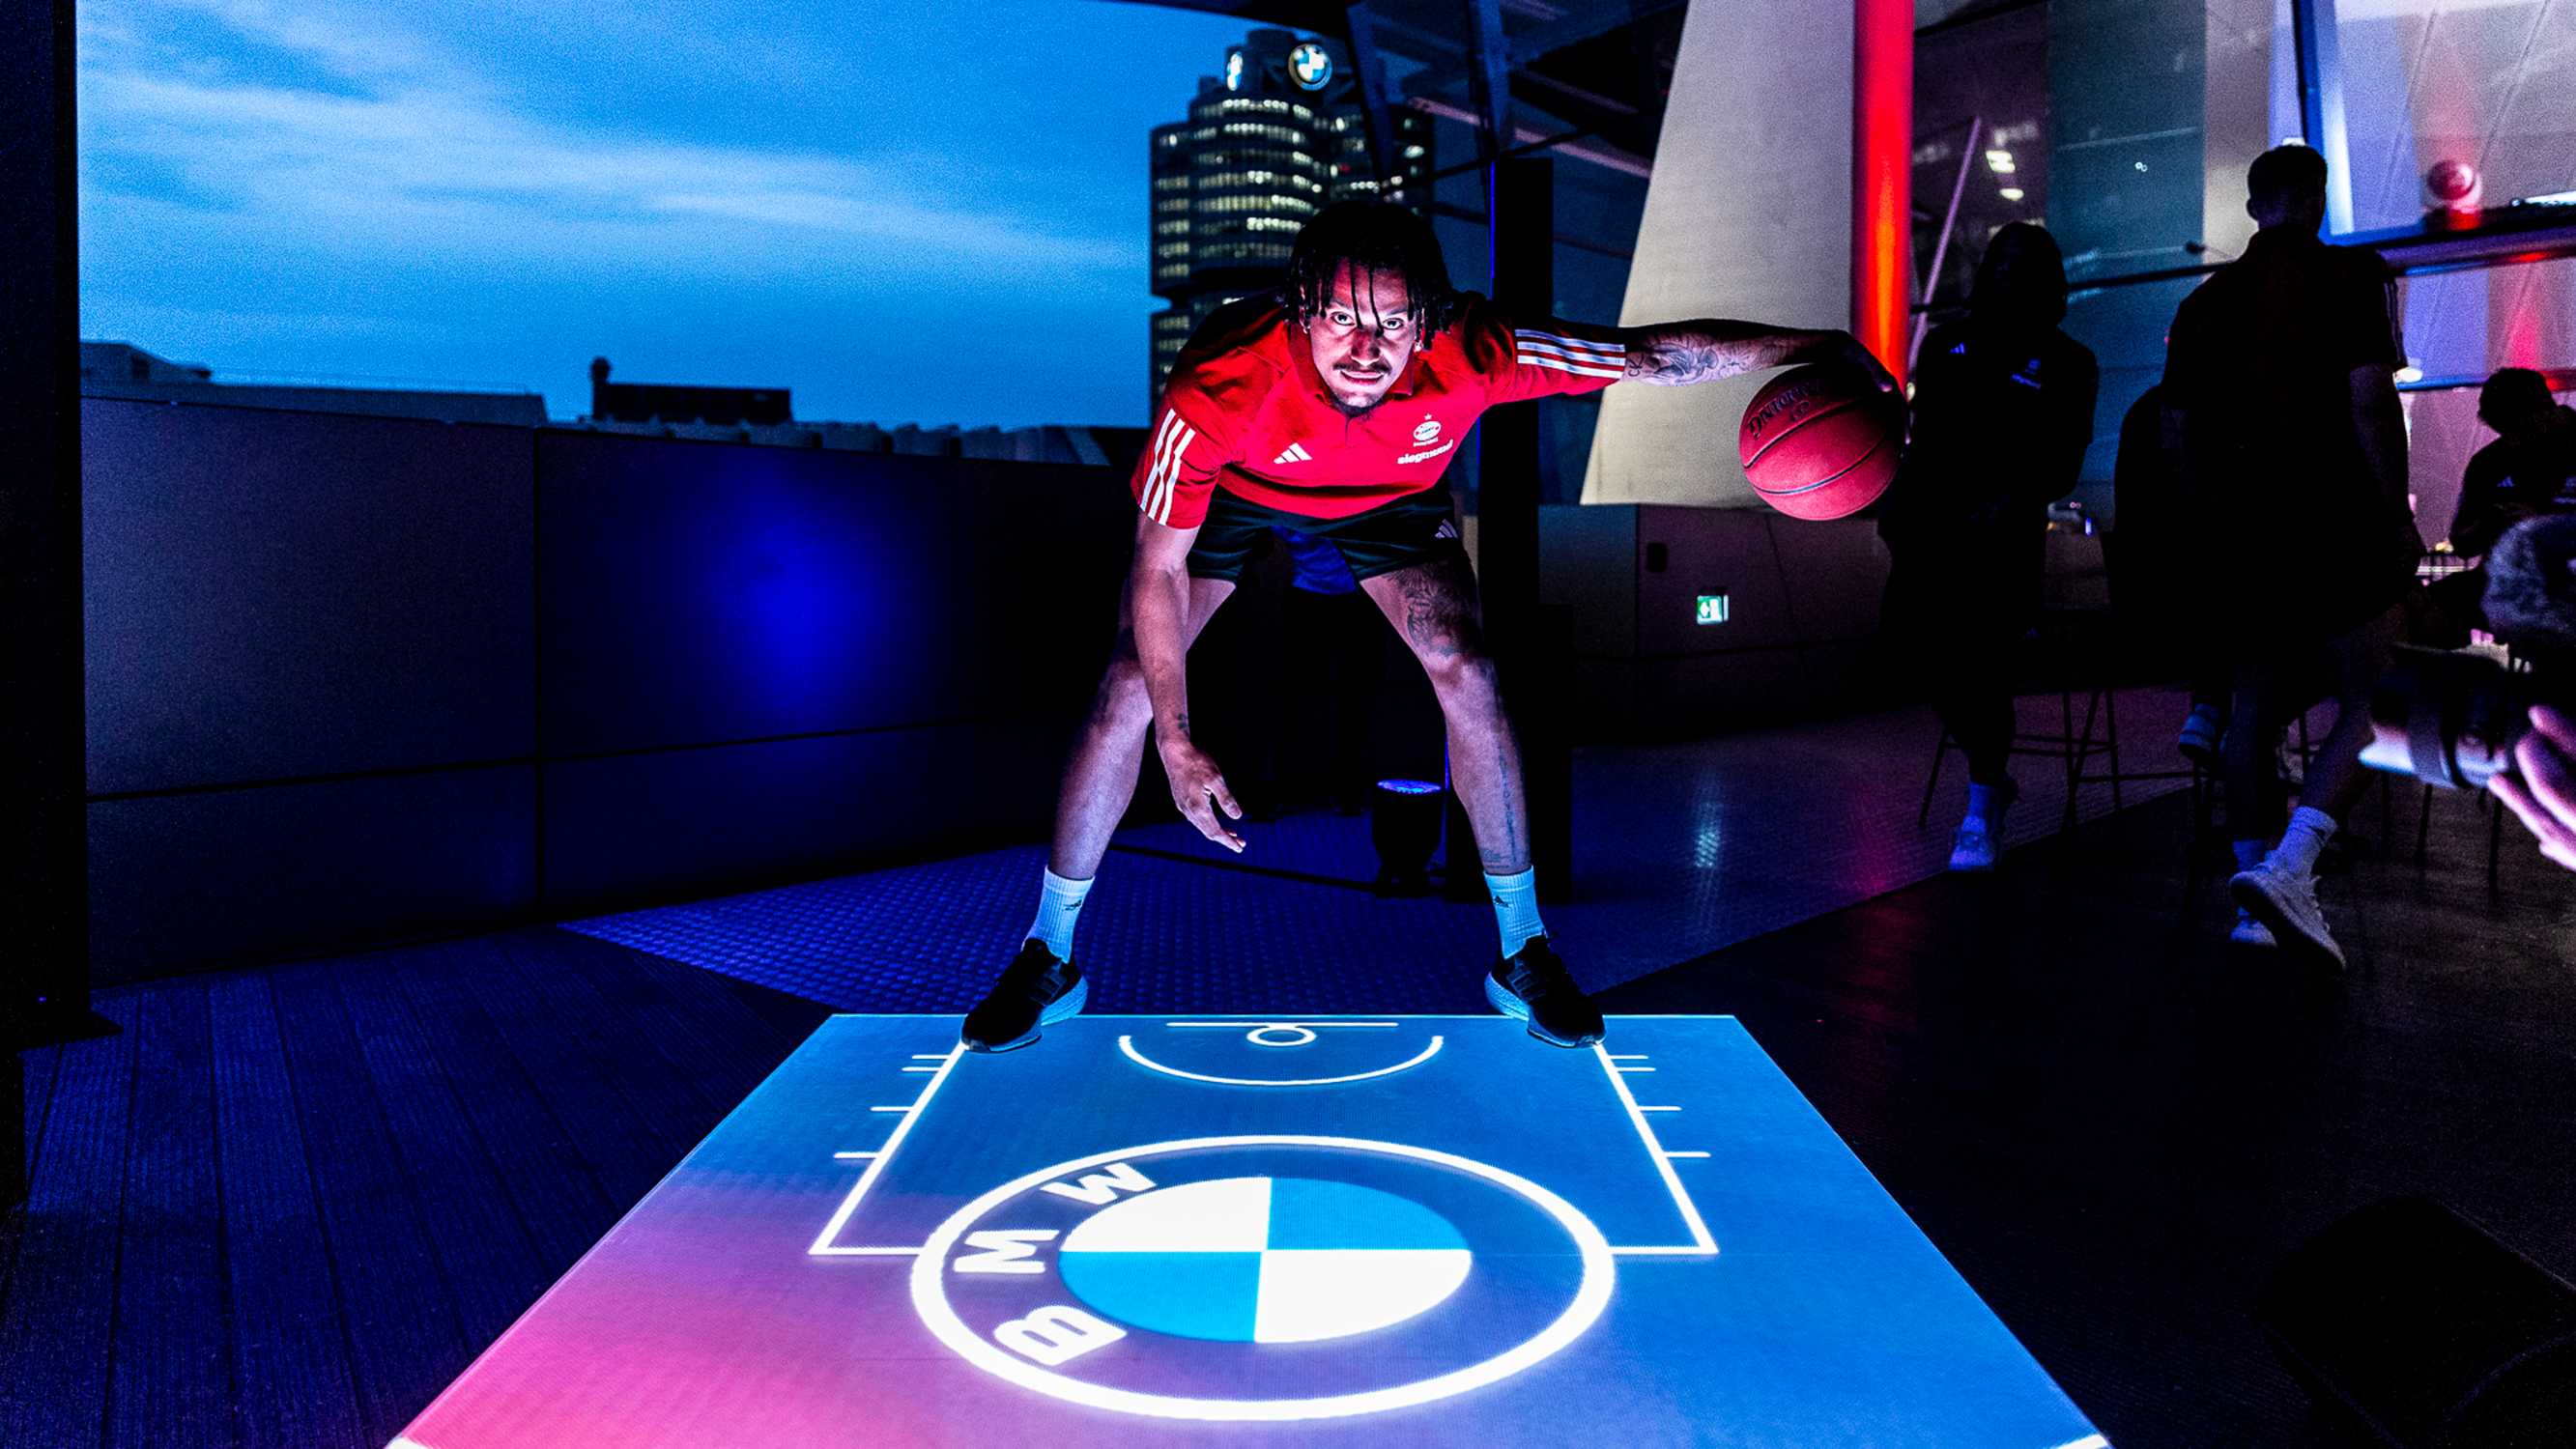 Premiere im BMW Park Saisonauftakt des FC Bayern München Basketball auf revolutionärem Hightech-Videosportboden.